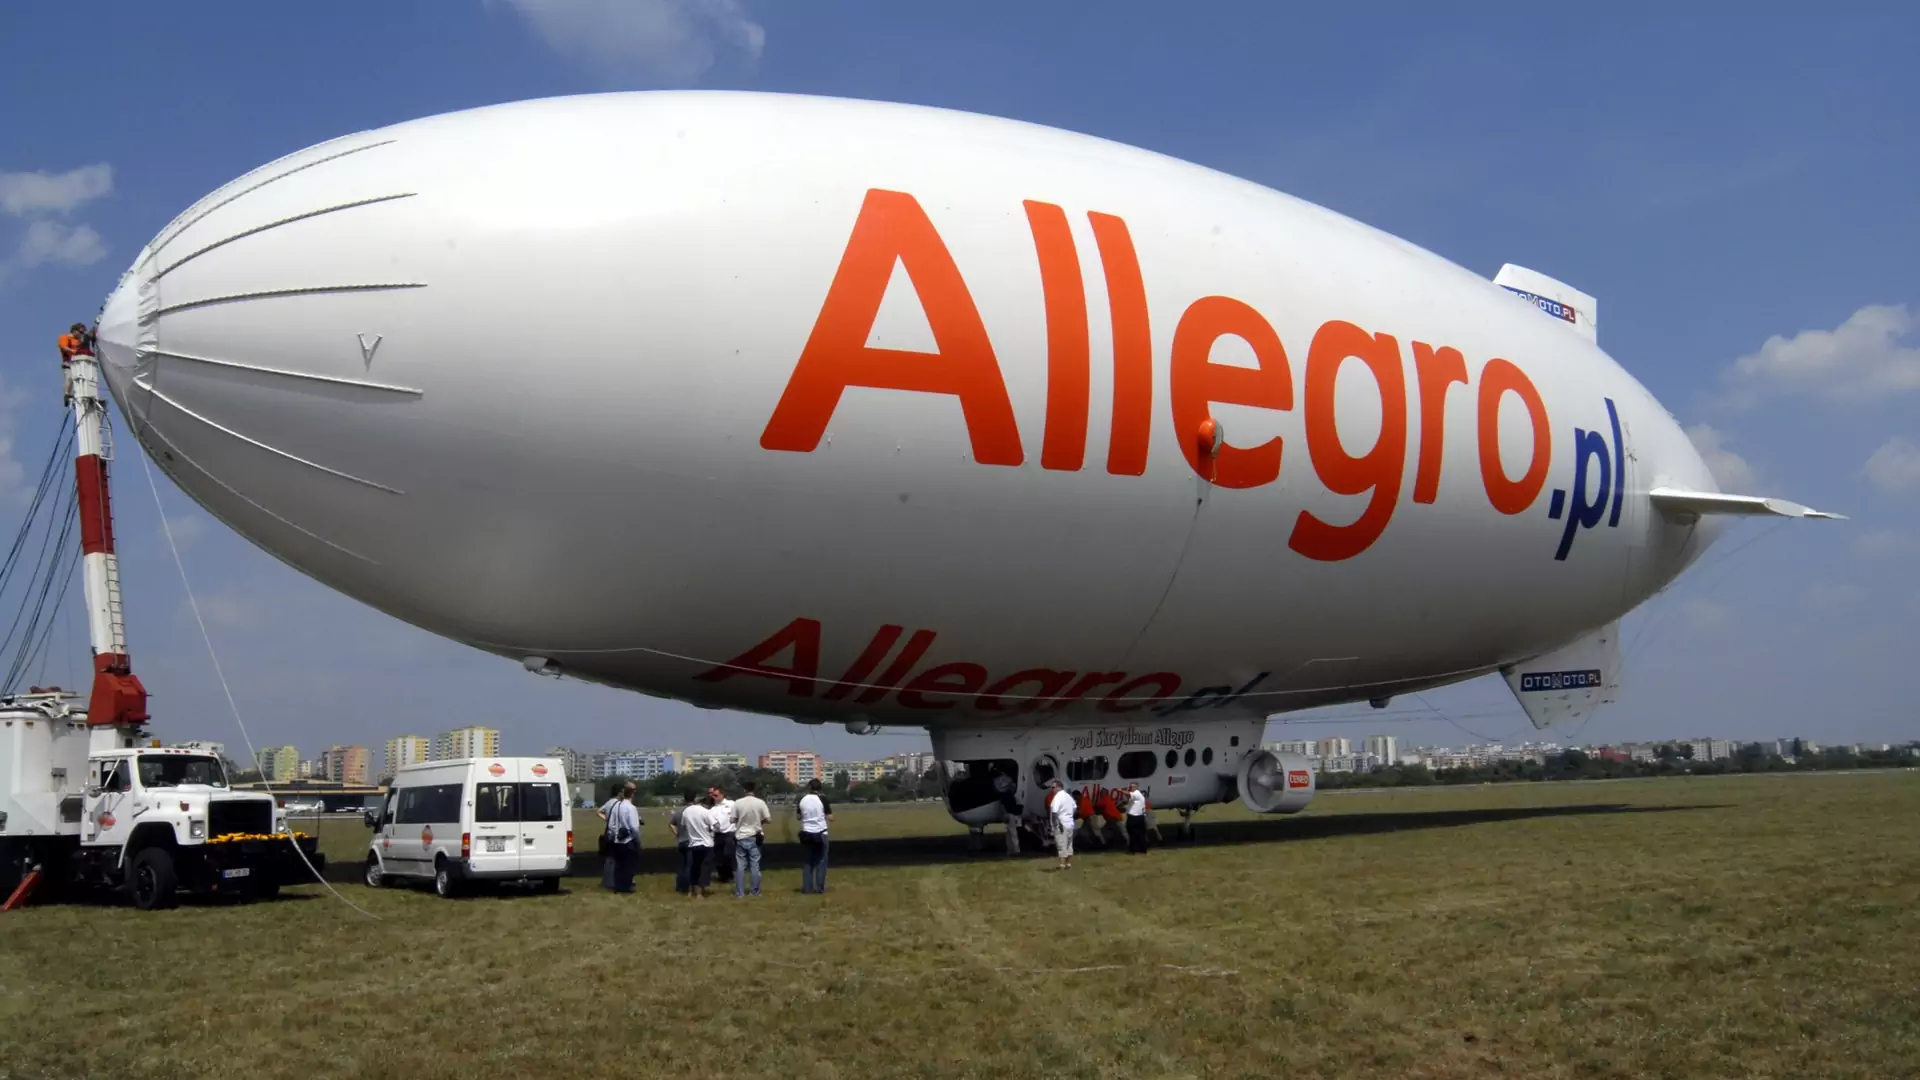 Allegro zostało sprzedane! To największa transakcja w historii polskiego internetu